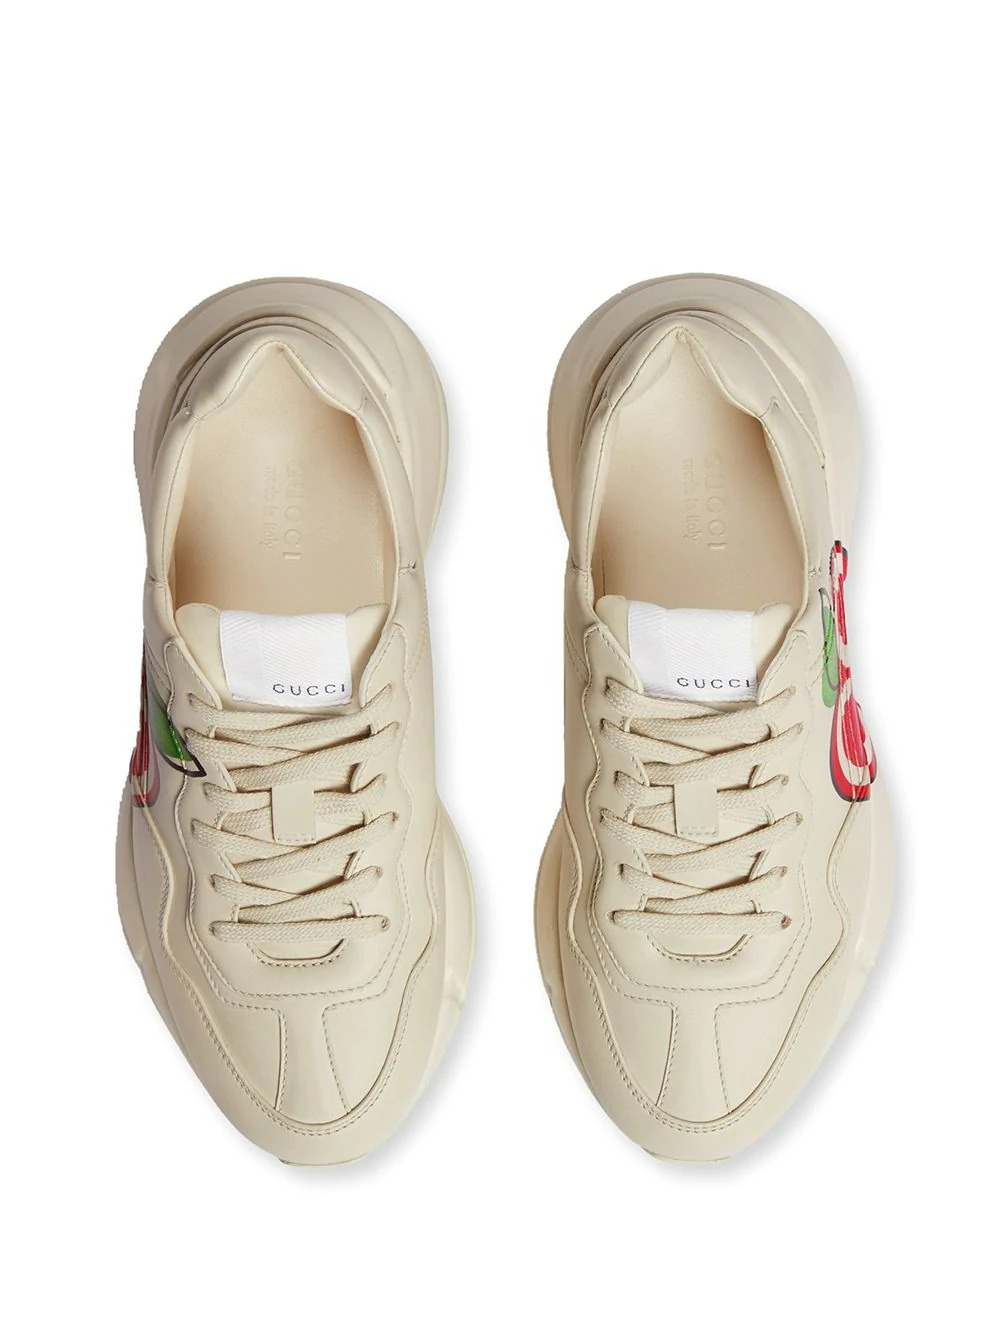 Gucci Rhyton Sneakers Gucci Apple Print - Pk-Kicks